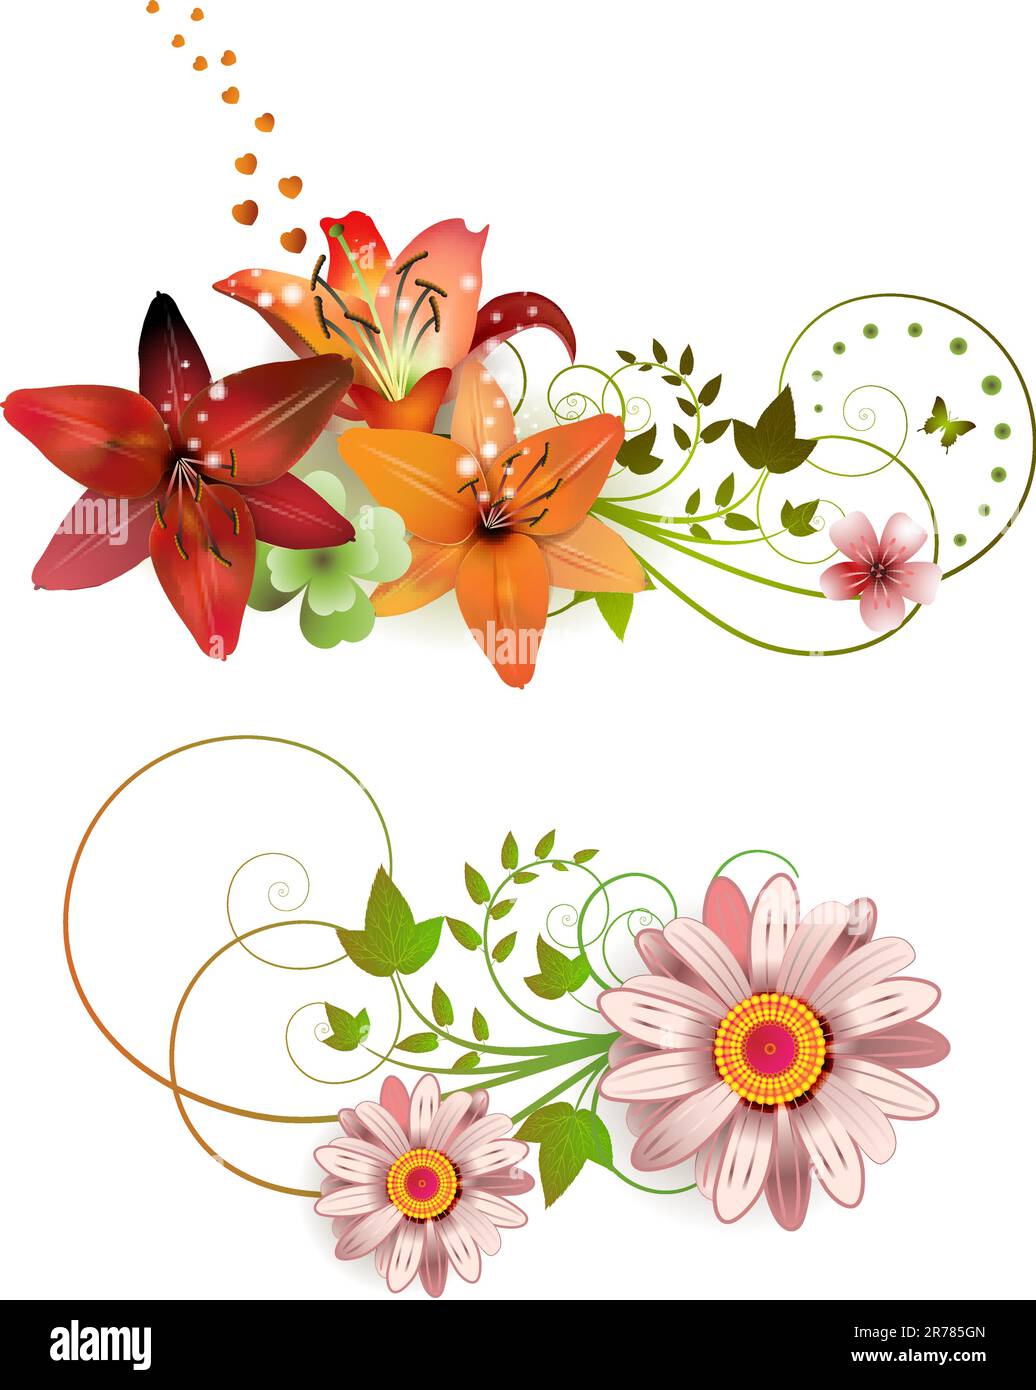 Blumenarrangements und Schmetterlinge, Lilien in verschiedenen Farben Stock Vektor